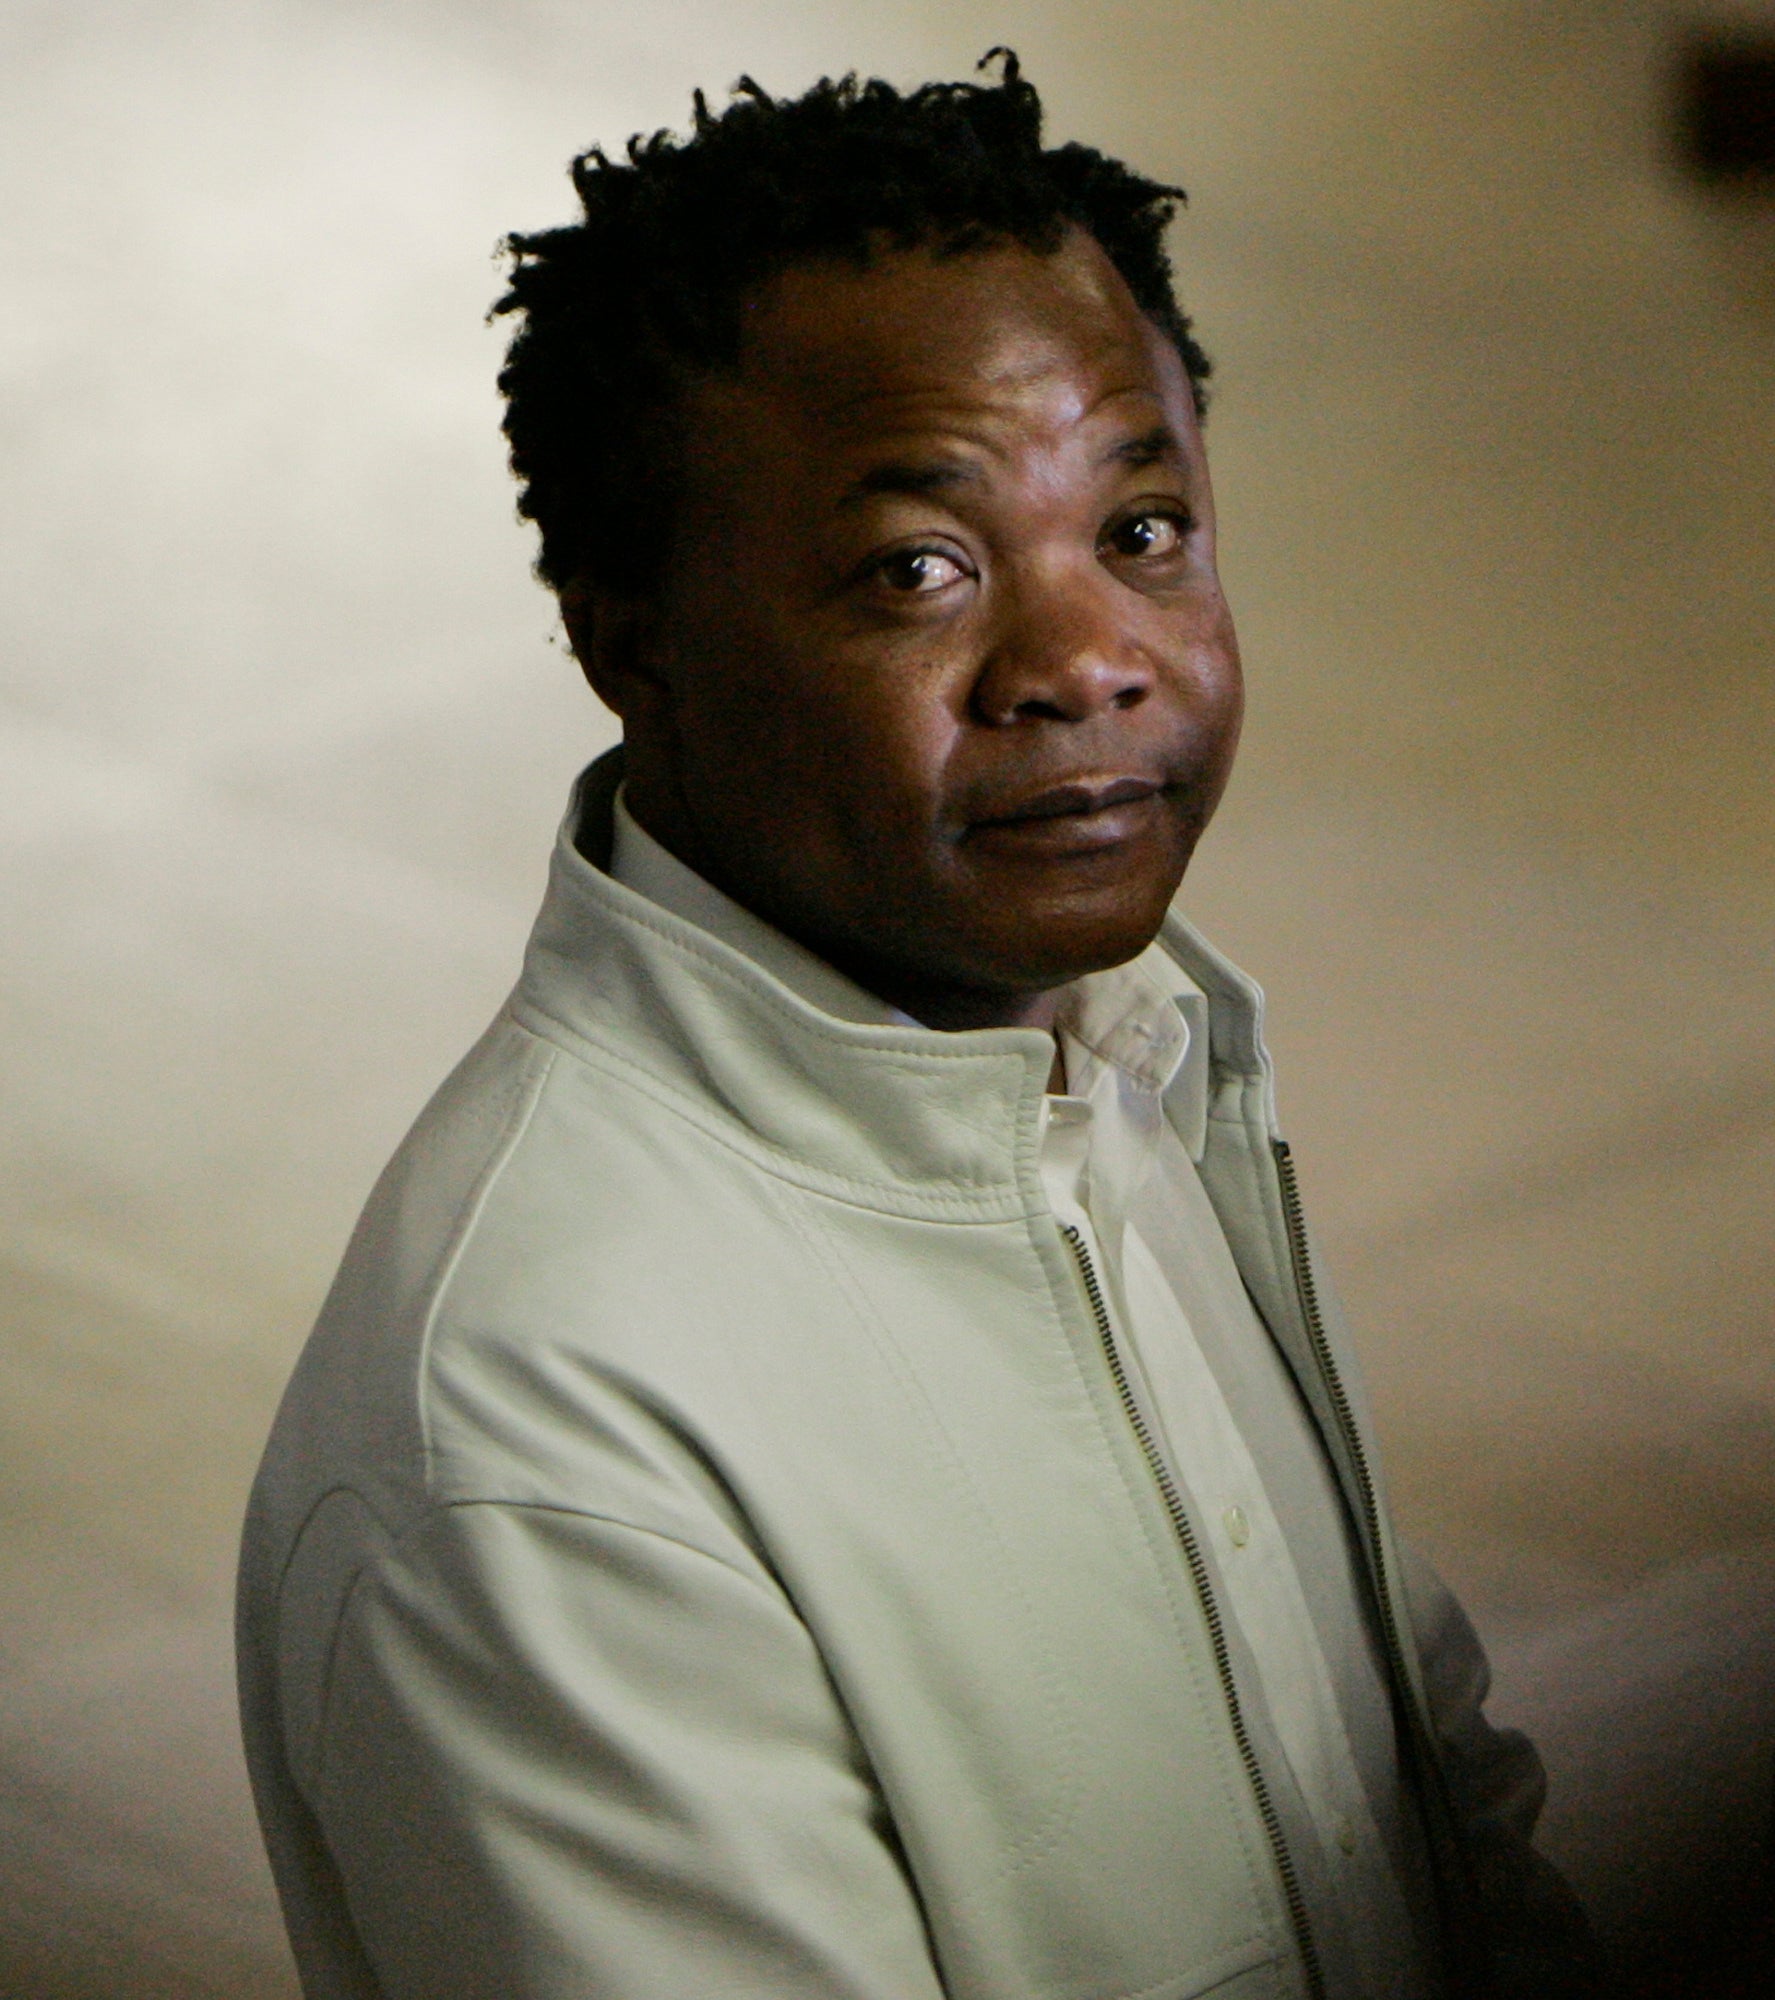 El congoleño Diya “Patrick” Lumumba fue encarcelado por el asesinato de Meredith Kercher